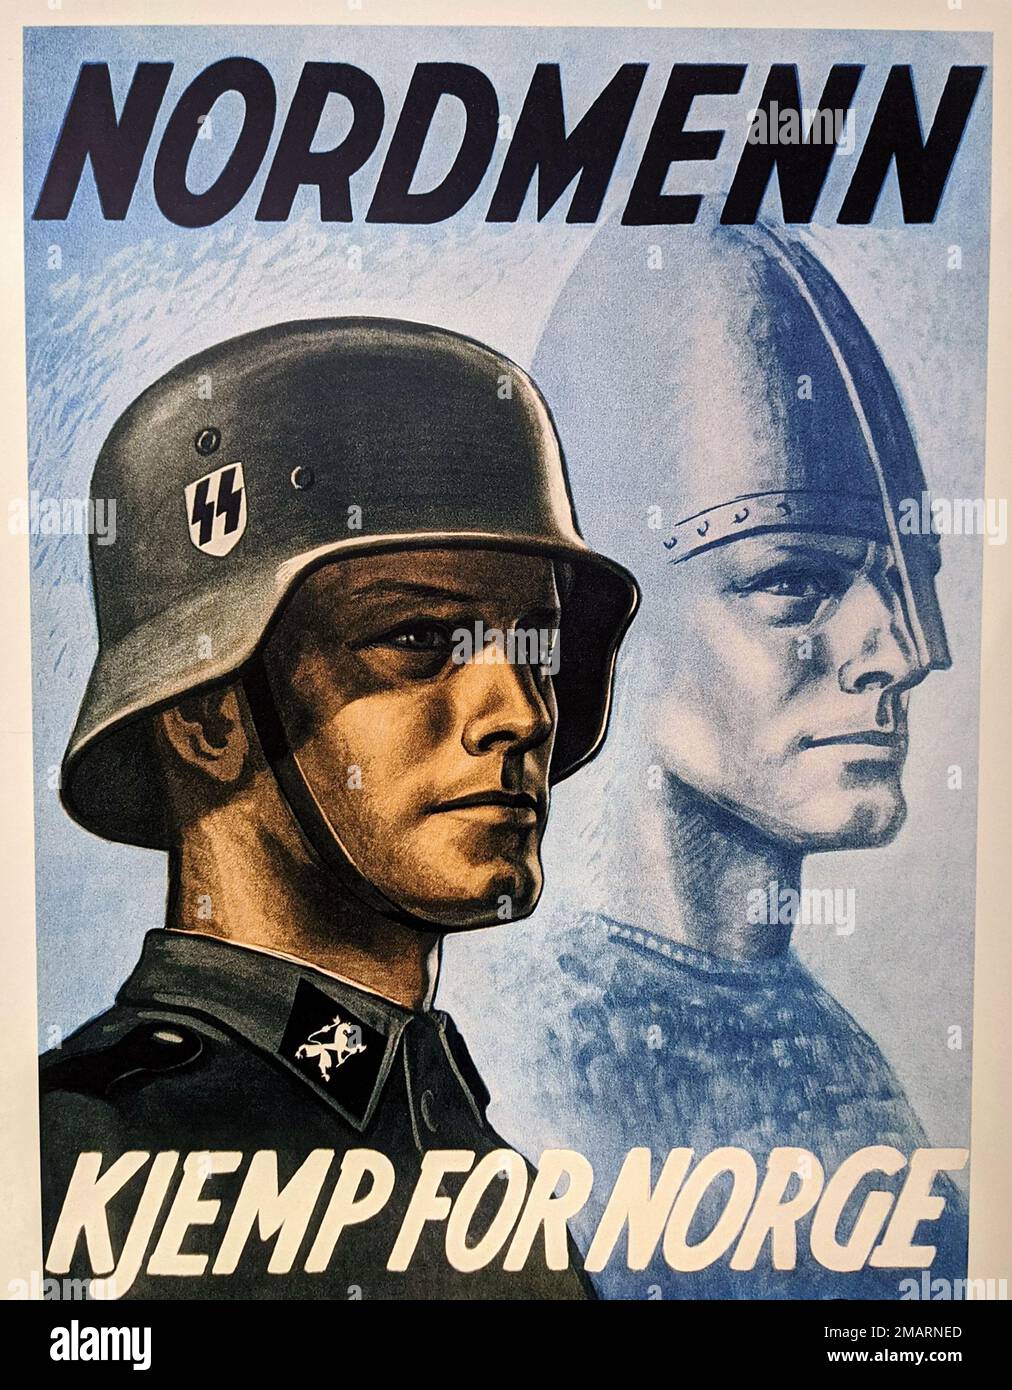 1942, OSLO , NORVEGIA : il dittatore tedesco di Fuhrer ADOLF HITLER ( 1889 - 1945 ), capo del terzo Reich . Manifesto propaganda per l'arruolamento militare NAZISTA in NORVEGIA per il WAFFEN SS Schutzstaffel ( NORDMENN : KJEMP PER NORGE , Stortingsgata 12 , Oslo ), insistendo sul mito della CORSA nordica e vichinga ARYAN SUPERMAN . L'organizzazione nazionalsocialista, il più importante portatore di terrore e la politica di sterminio dello stato nazionalsocialista fu la SS . Illustratore sconosciuto . - SECONDA GUERRA MONDIALE - NAZISTA - NAZISTA - NAZISTA - NAZISTA - NAZISMO - SECONDA GUERRA MONDIALE - WW2 - GUERRA MONDIALE Foto Stock